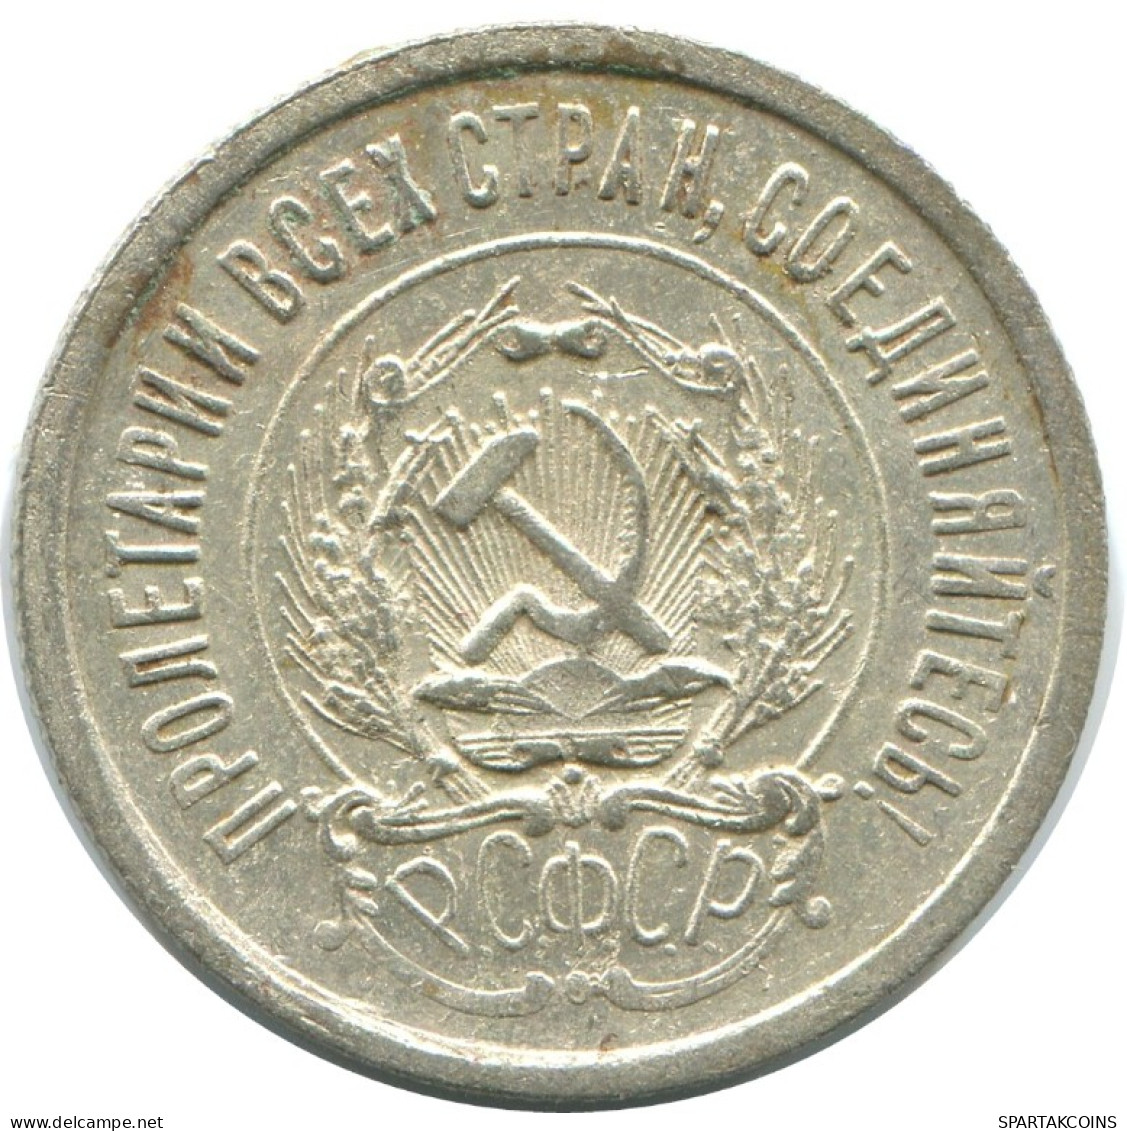 20 KOPEKS 1923 RUSSLAND RUSSIA RSFSR SILBER Münze HIGH GRADE #AF509.4.D.A - Russia